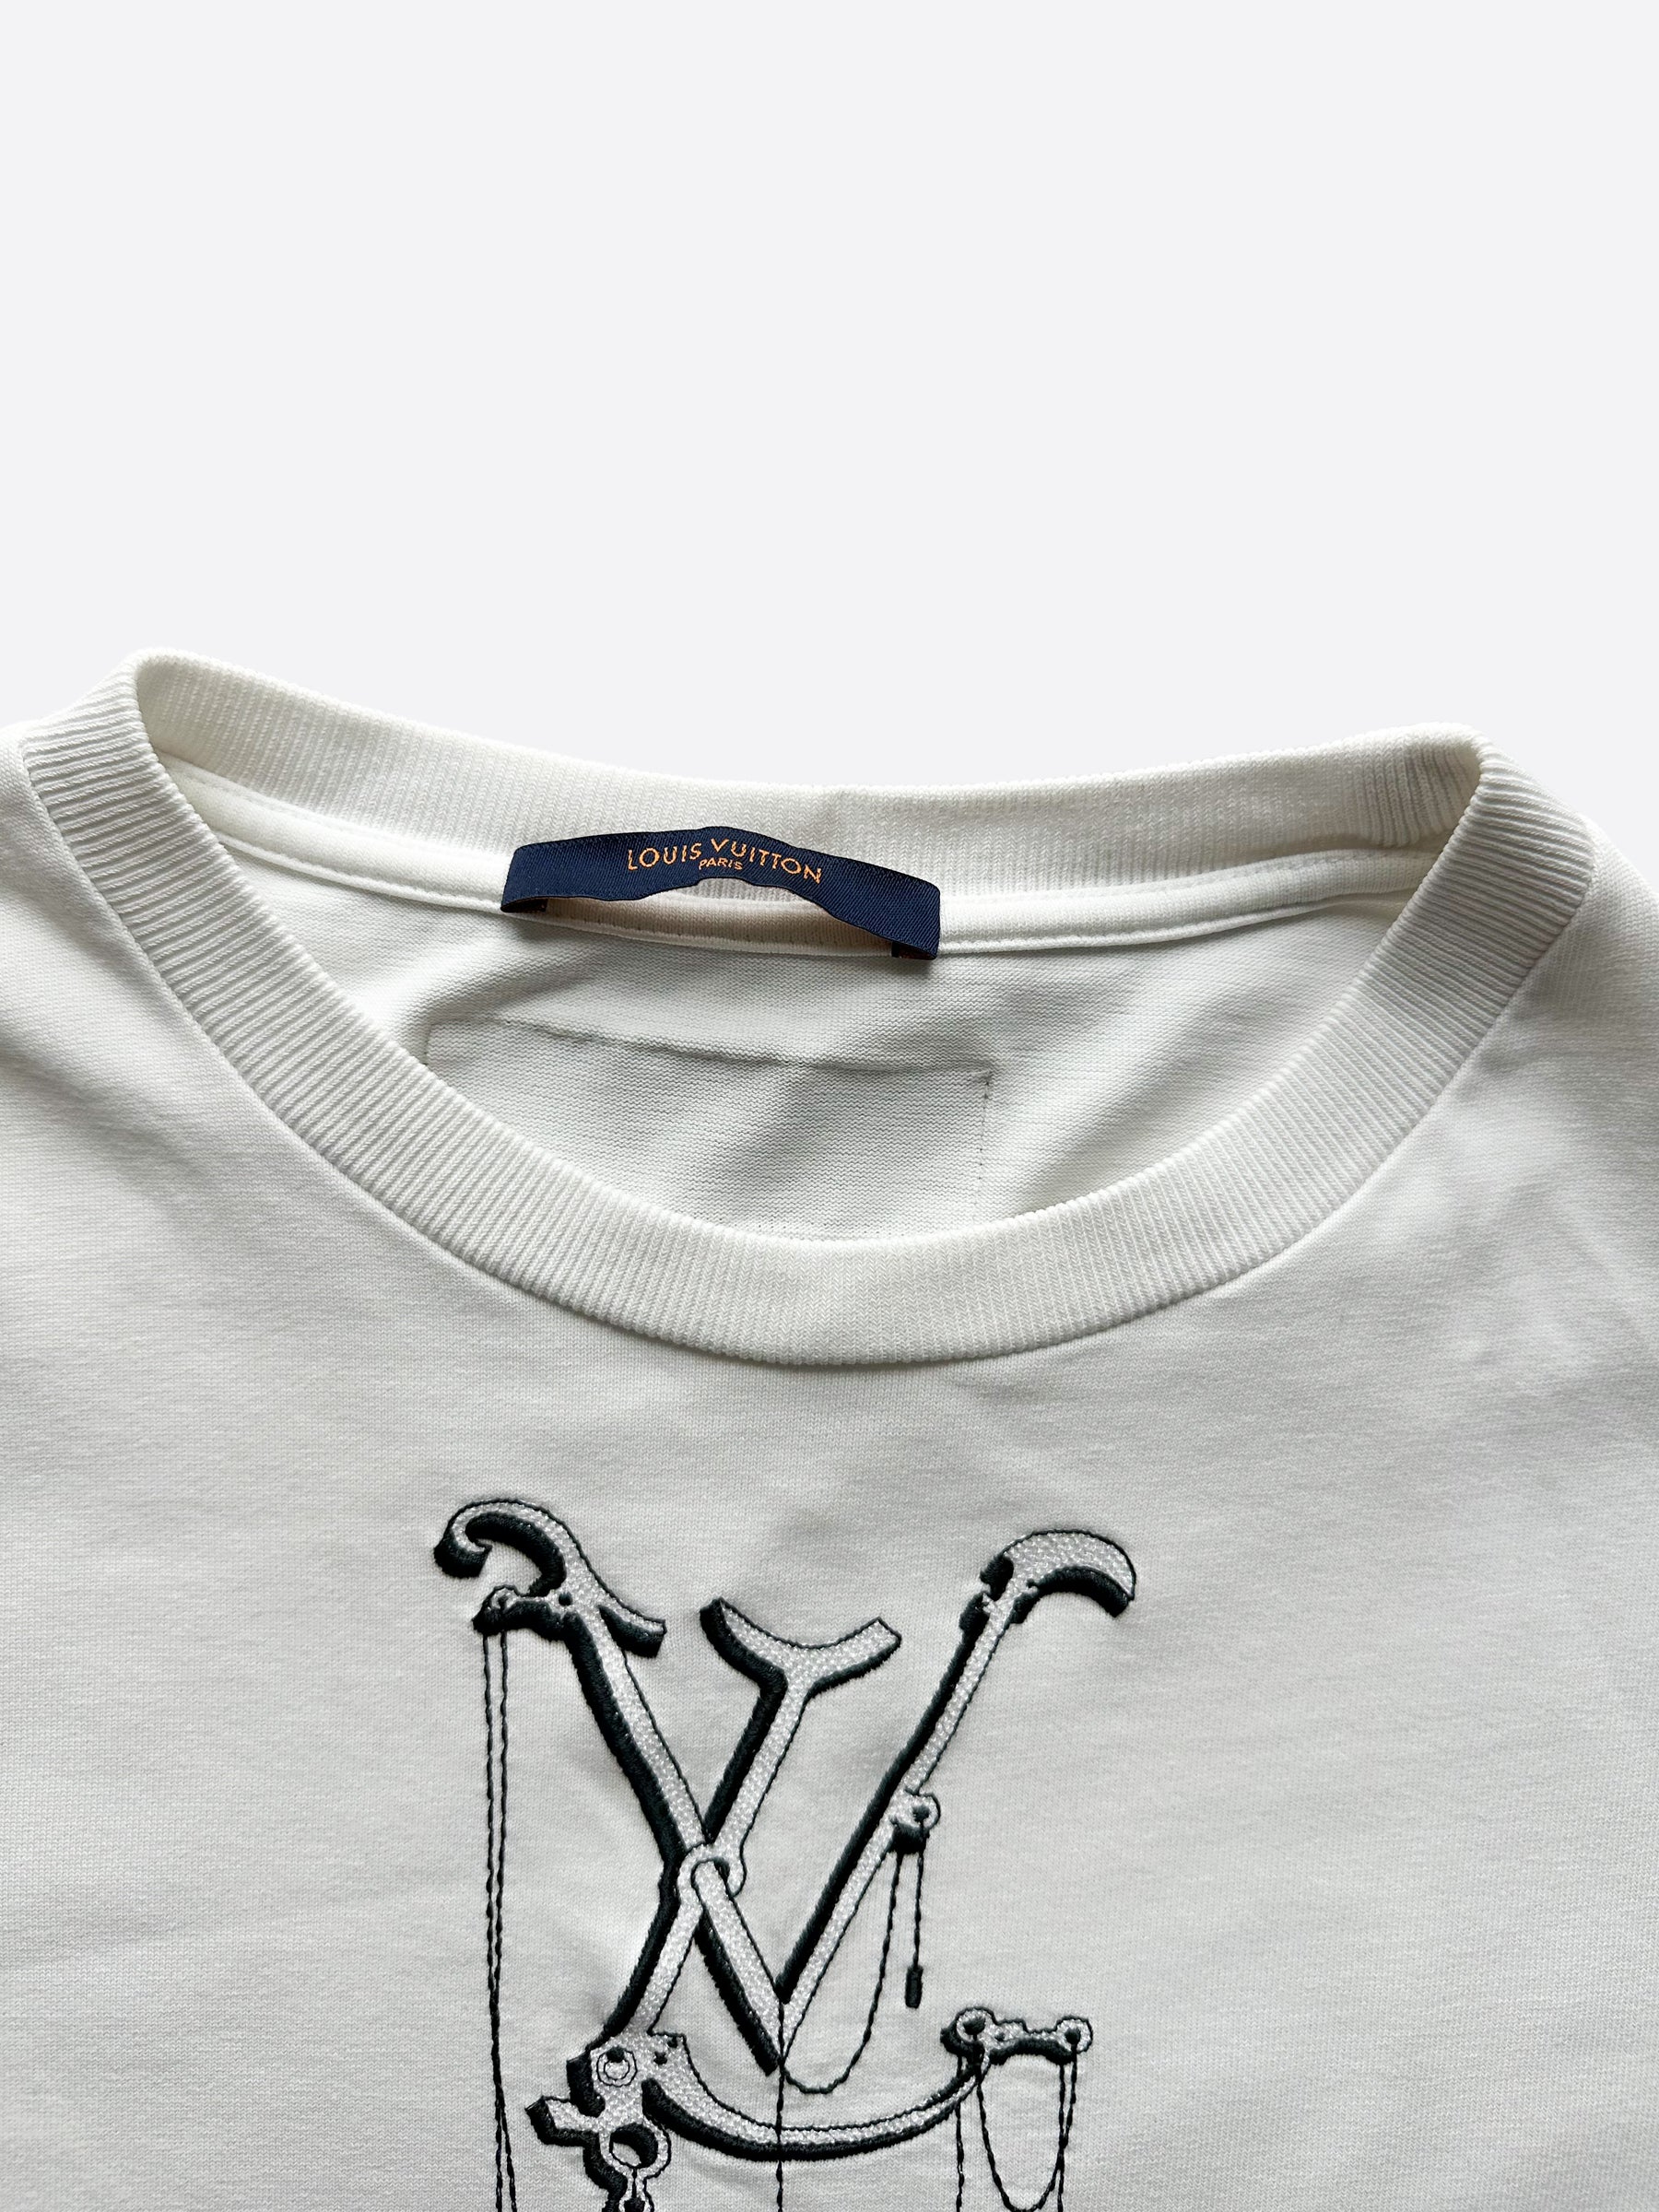  Louis Vuitton Embroidered Logo Applique, Black Heart